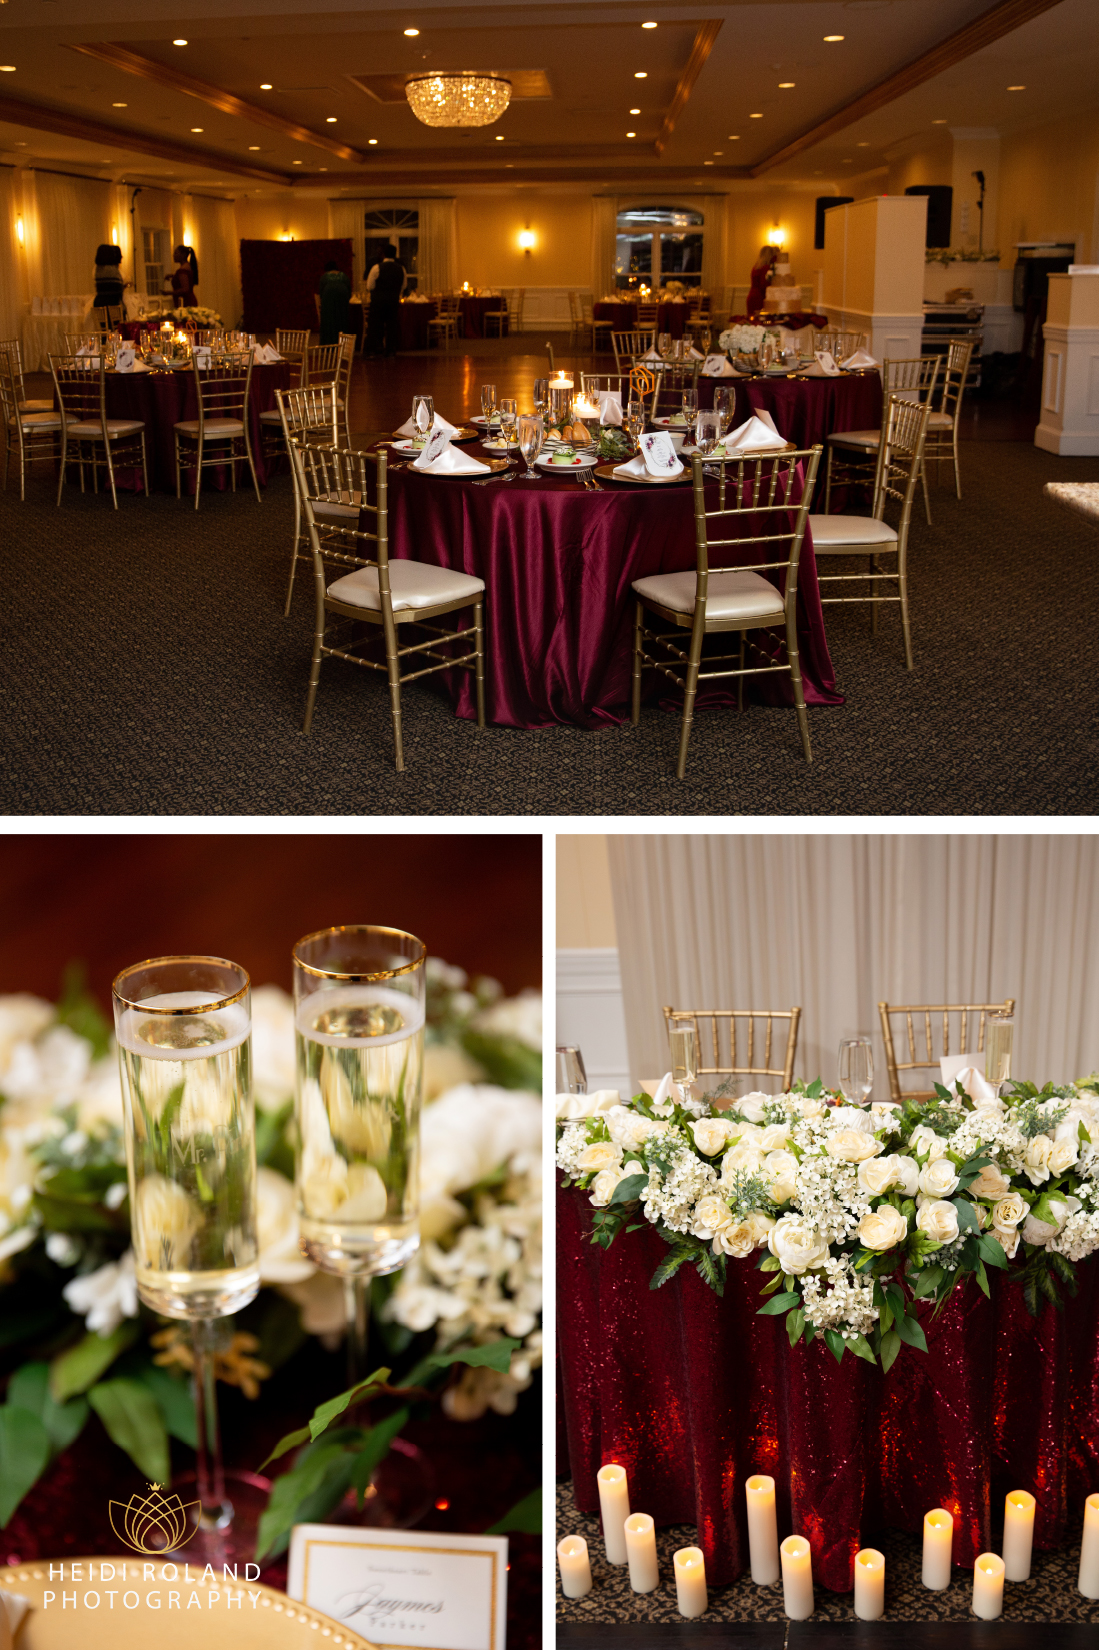 Penn Oaks Golf Club Wedding reception room details 